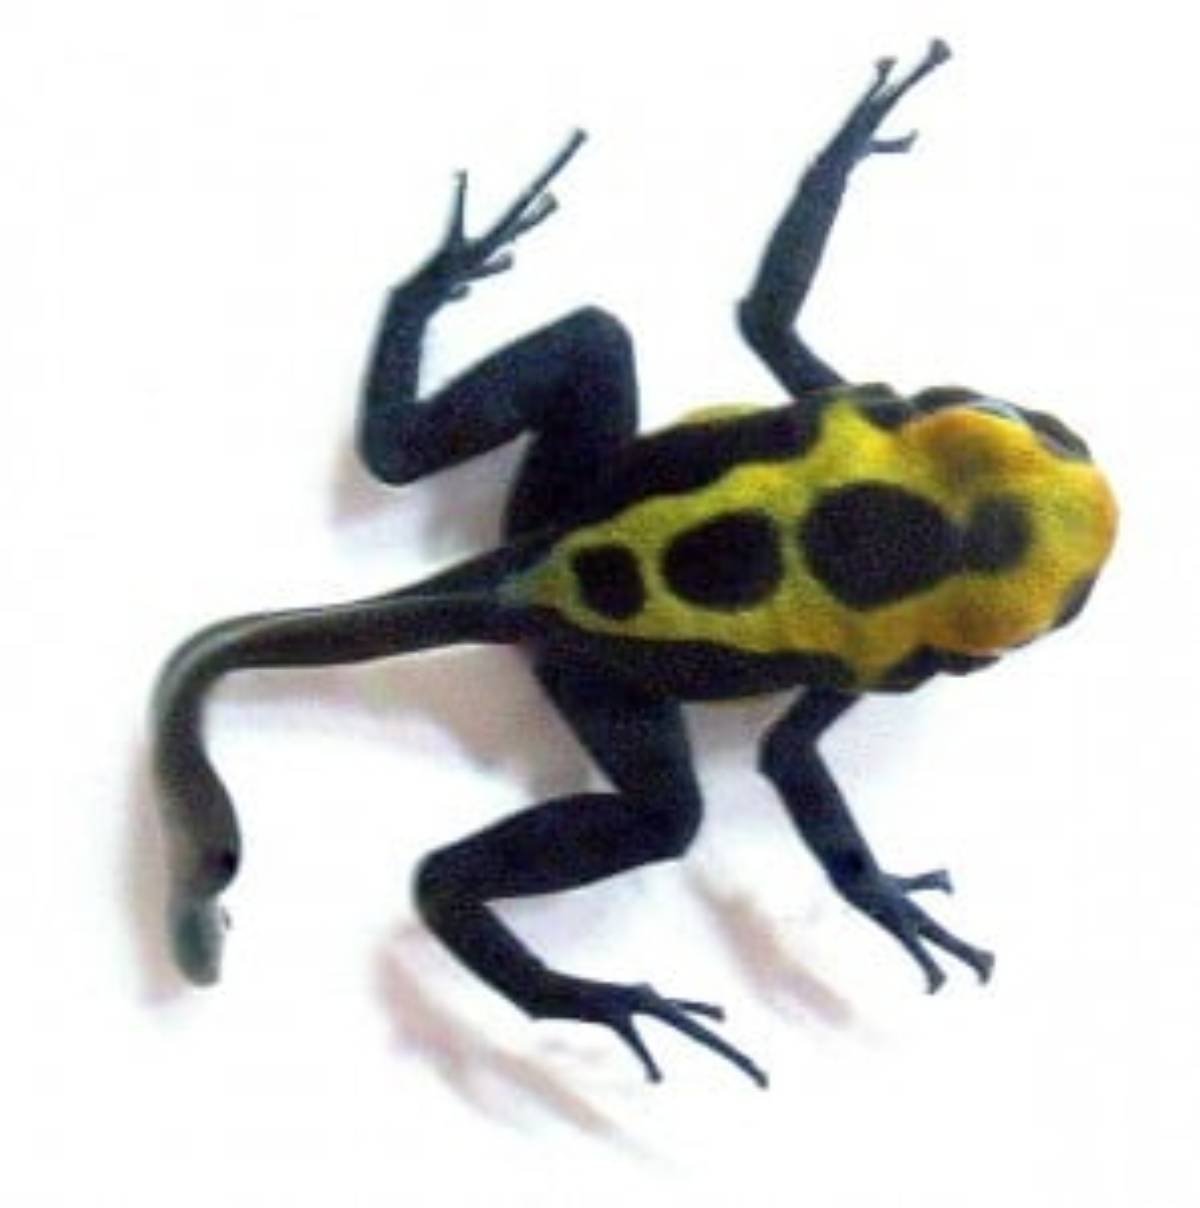 Dendrobates tinctorius 'Cobalt' poison dart frog metamorph